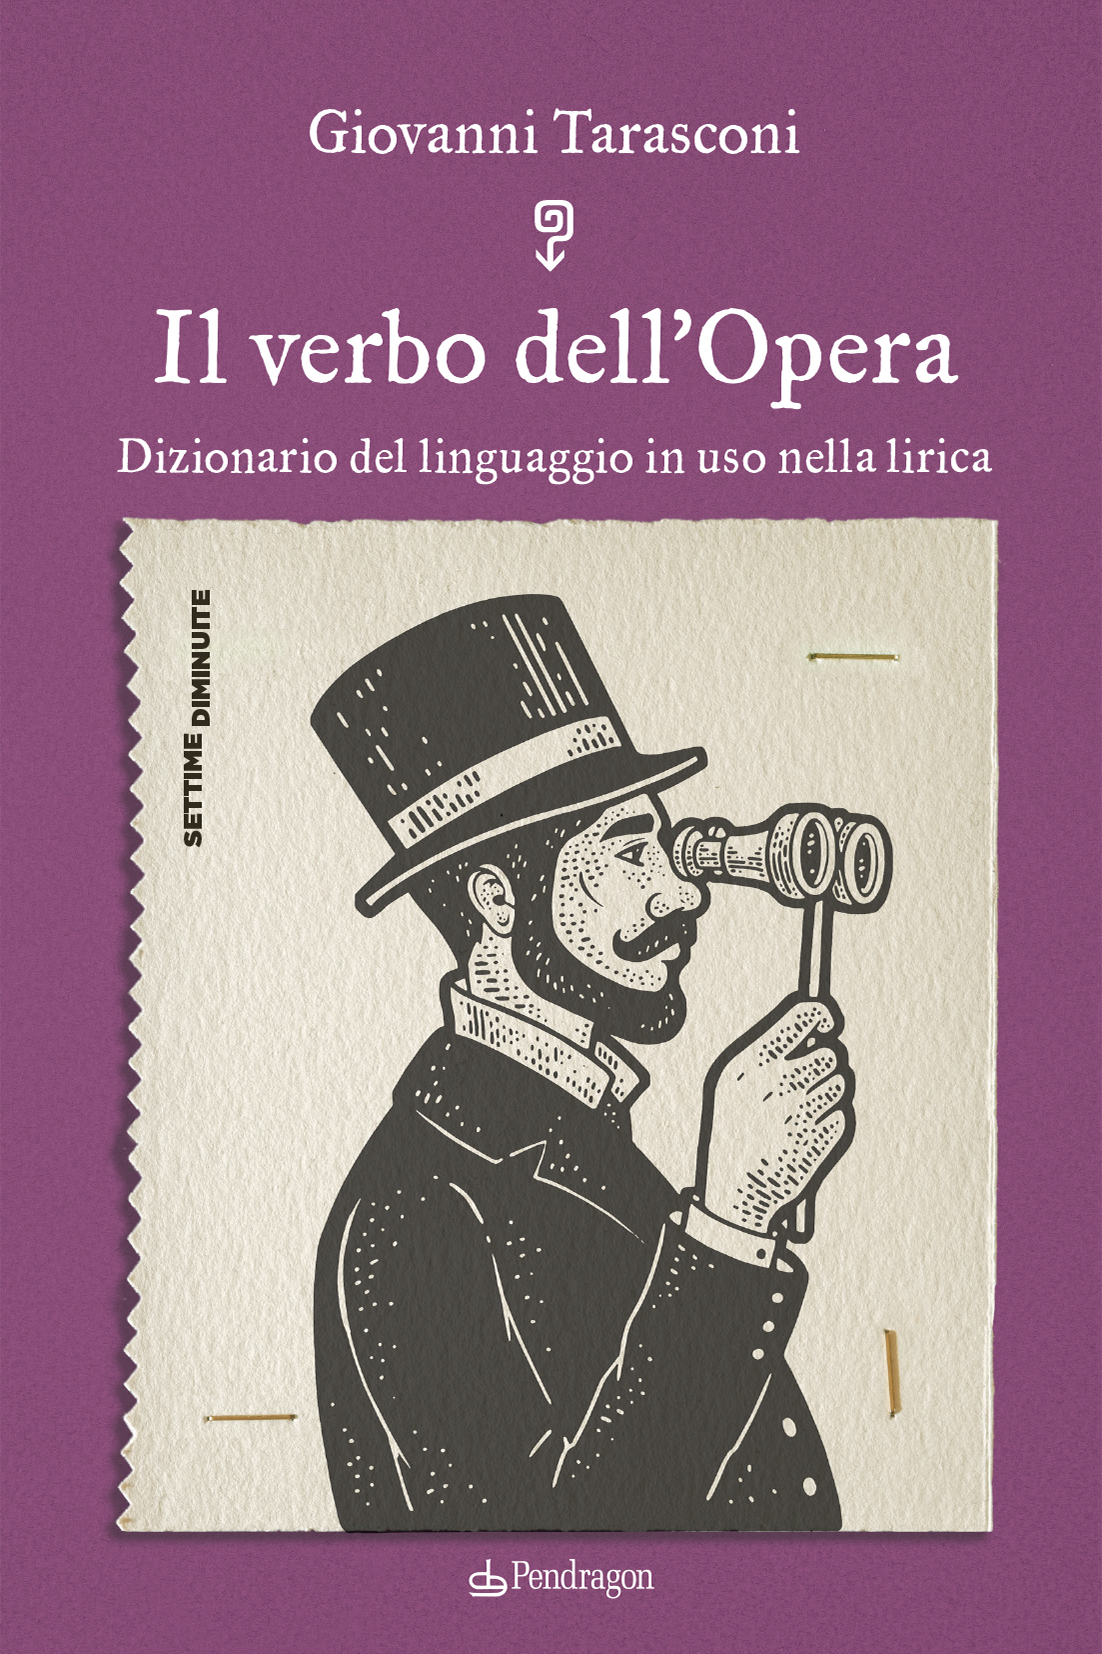 Giovanni Tarasconi - Il verbo dell’Opera